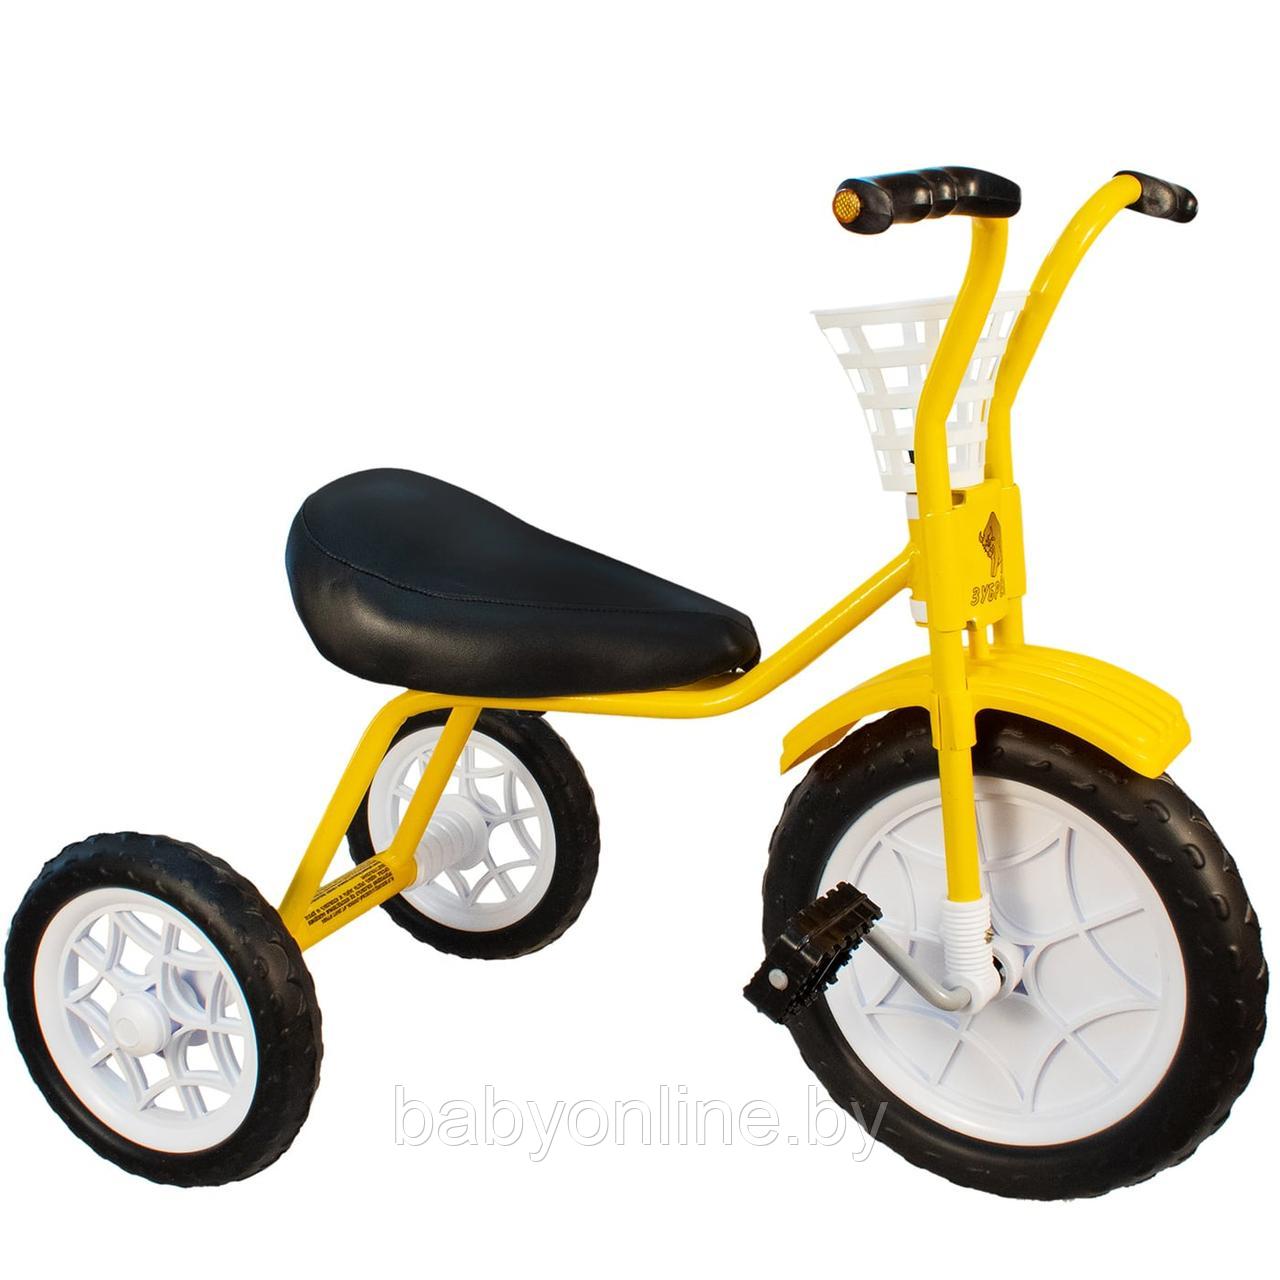 Детский велосипед трехколесный Зубренок 526-611YWВО